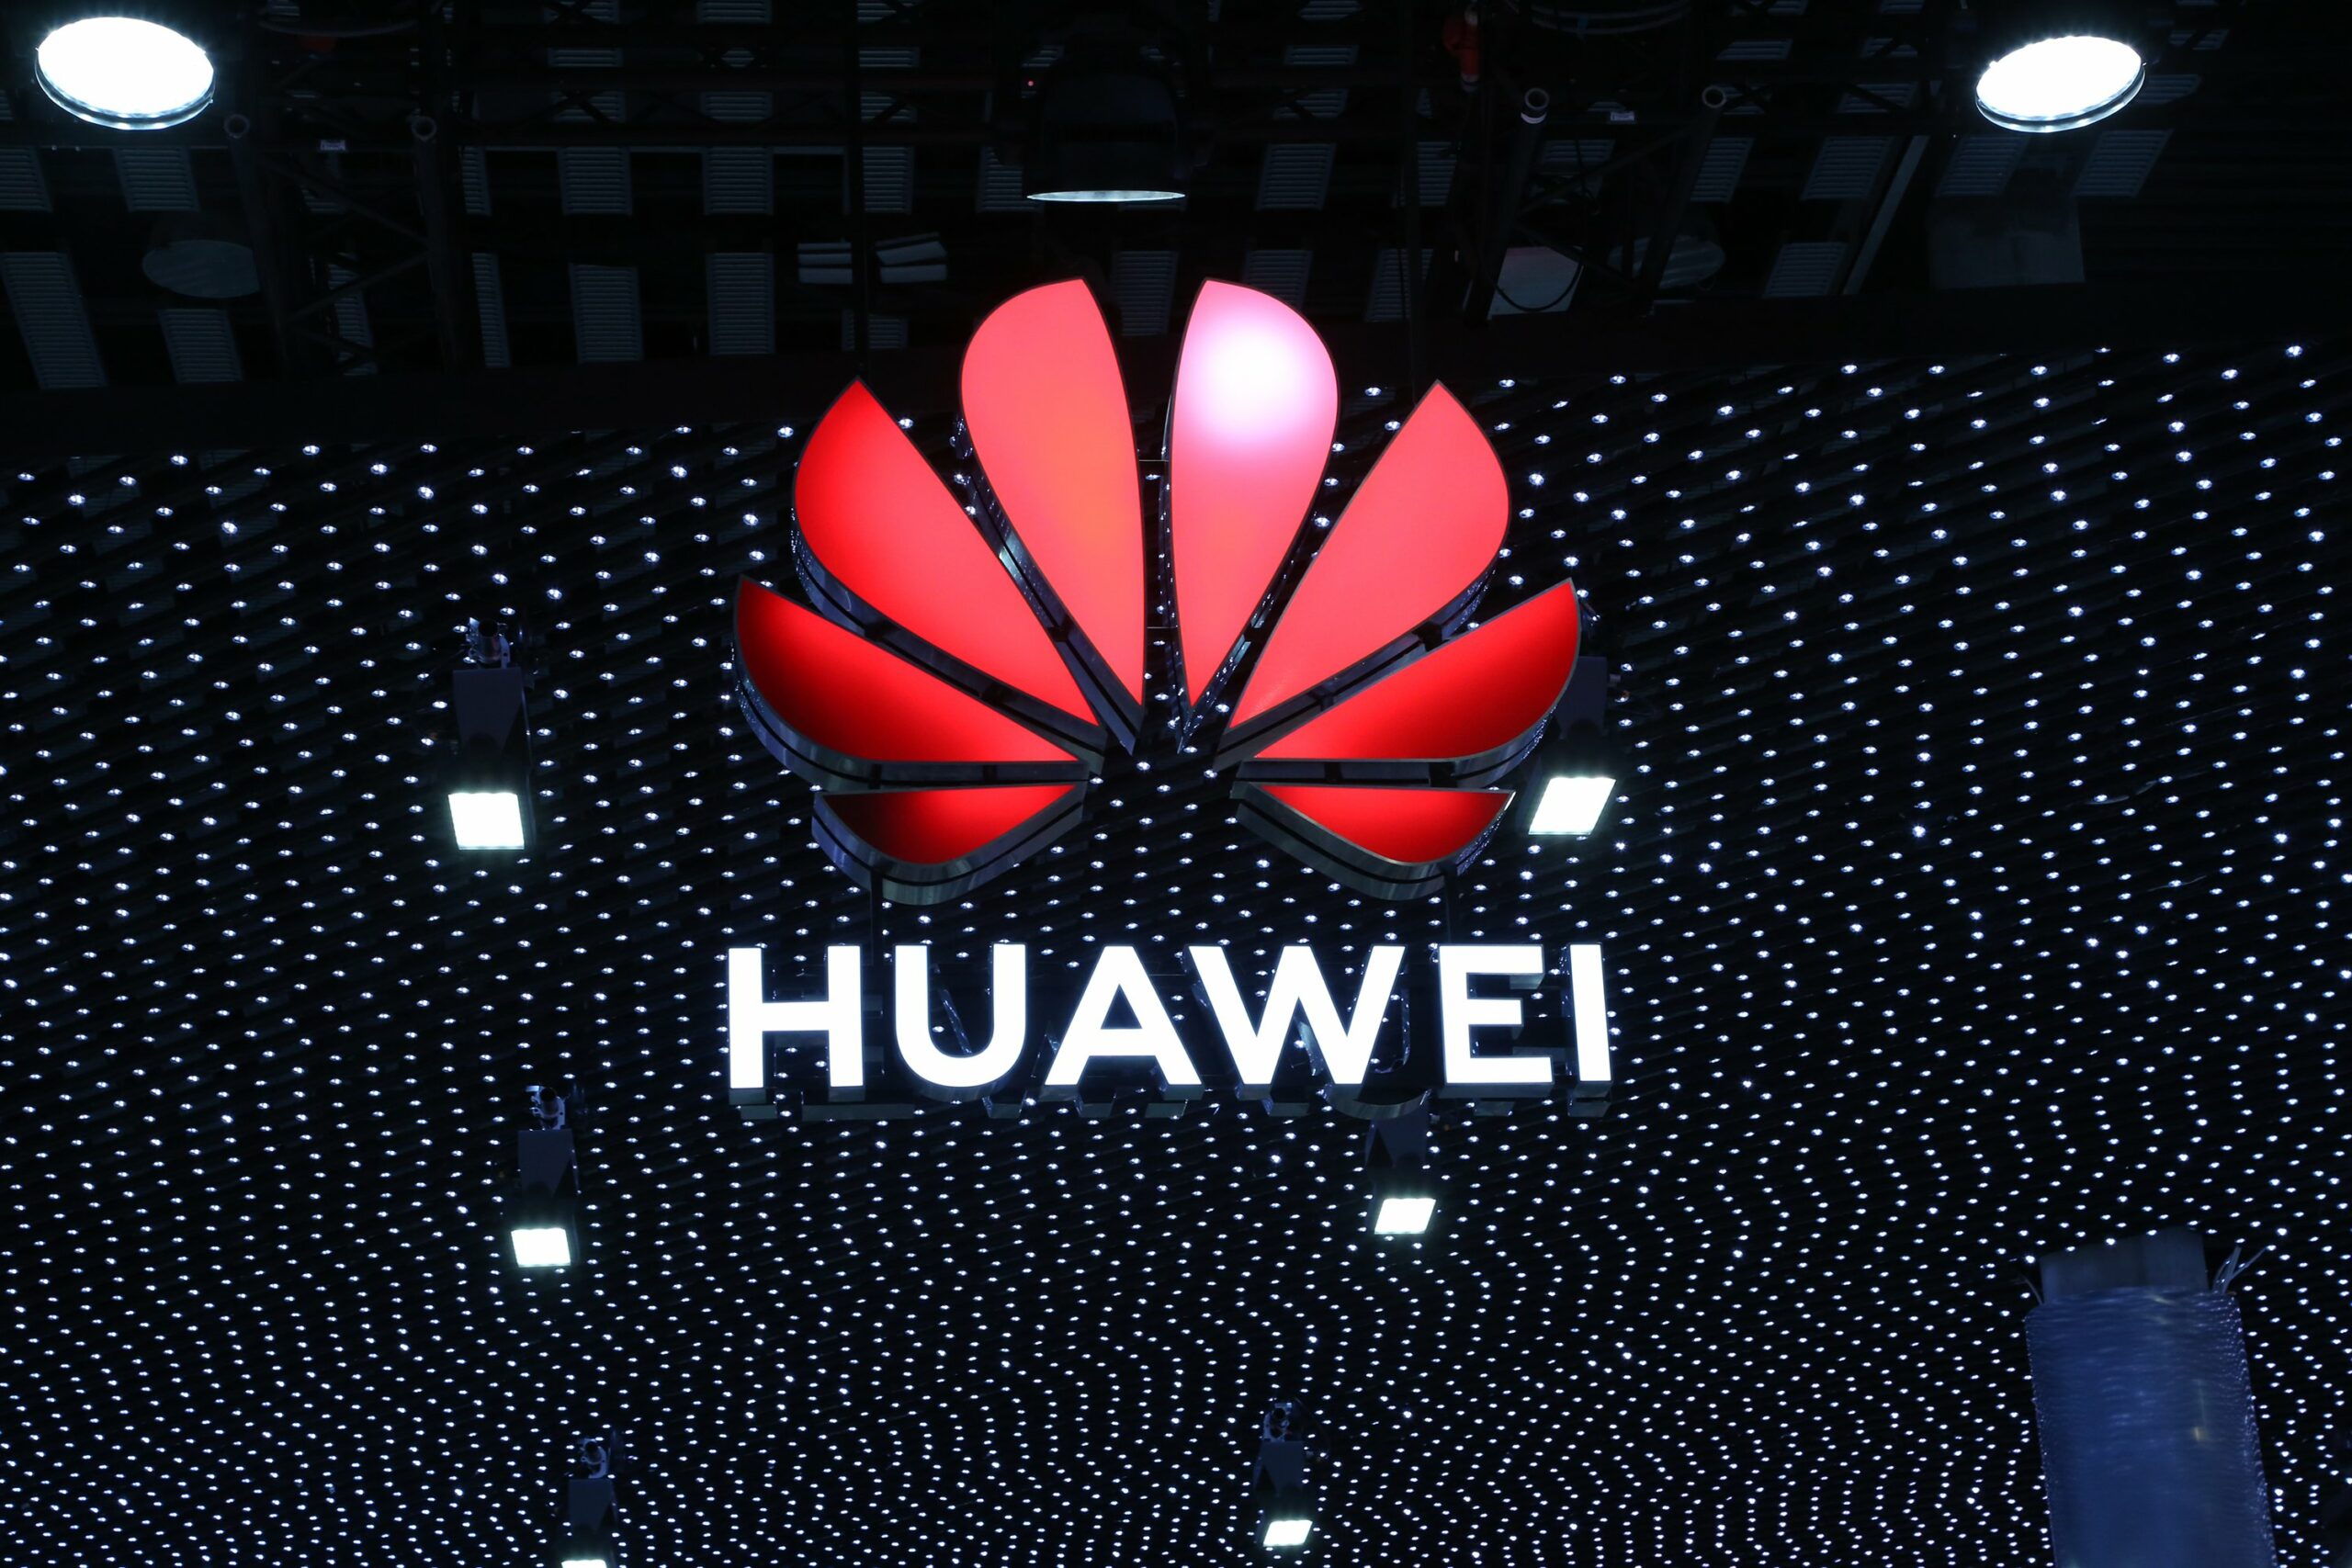 โลโก้ Huawei MWC 2019